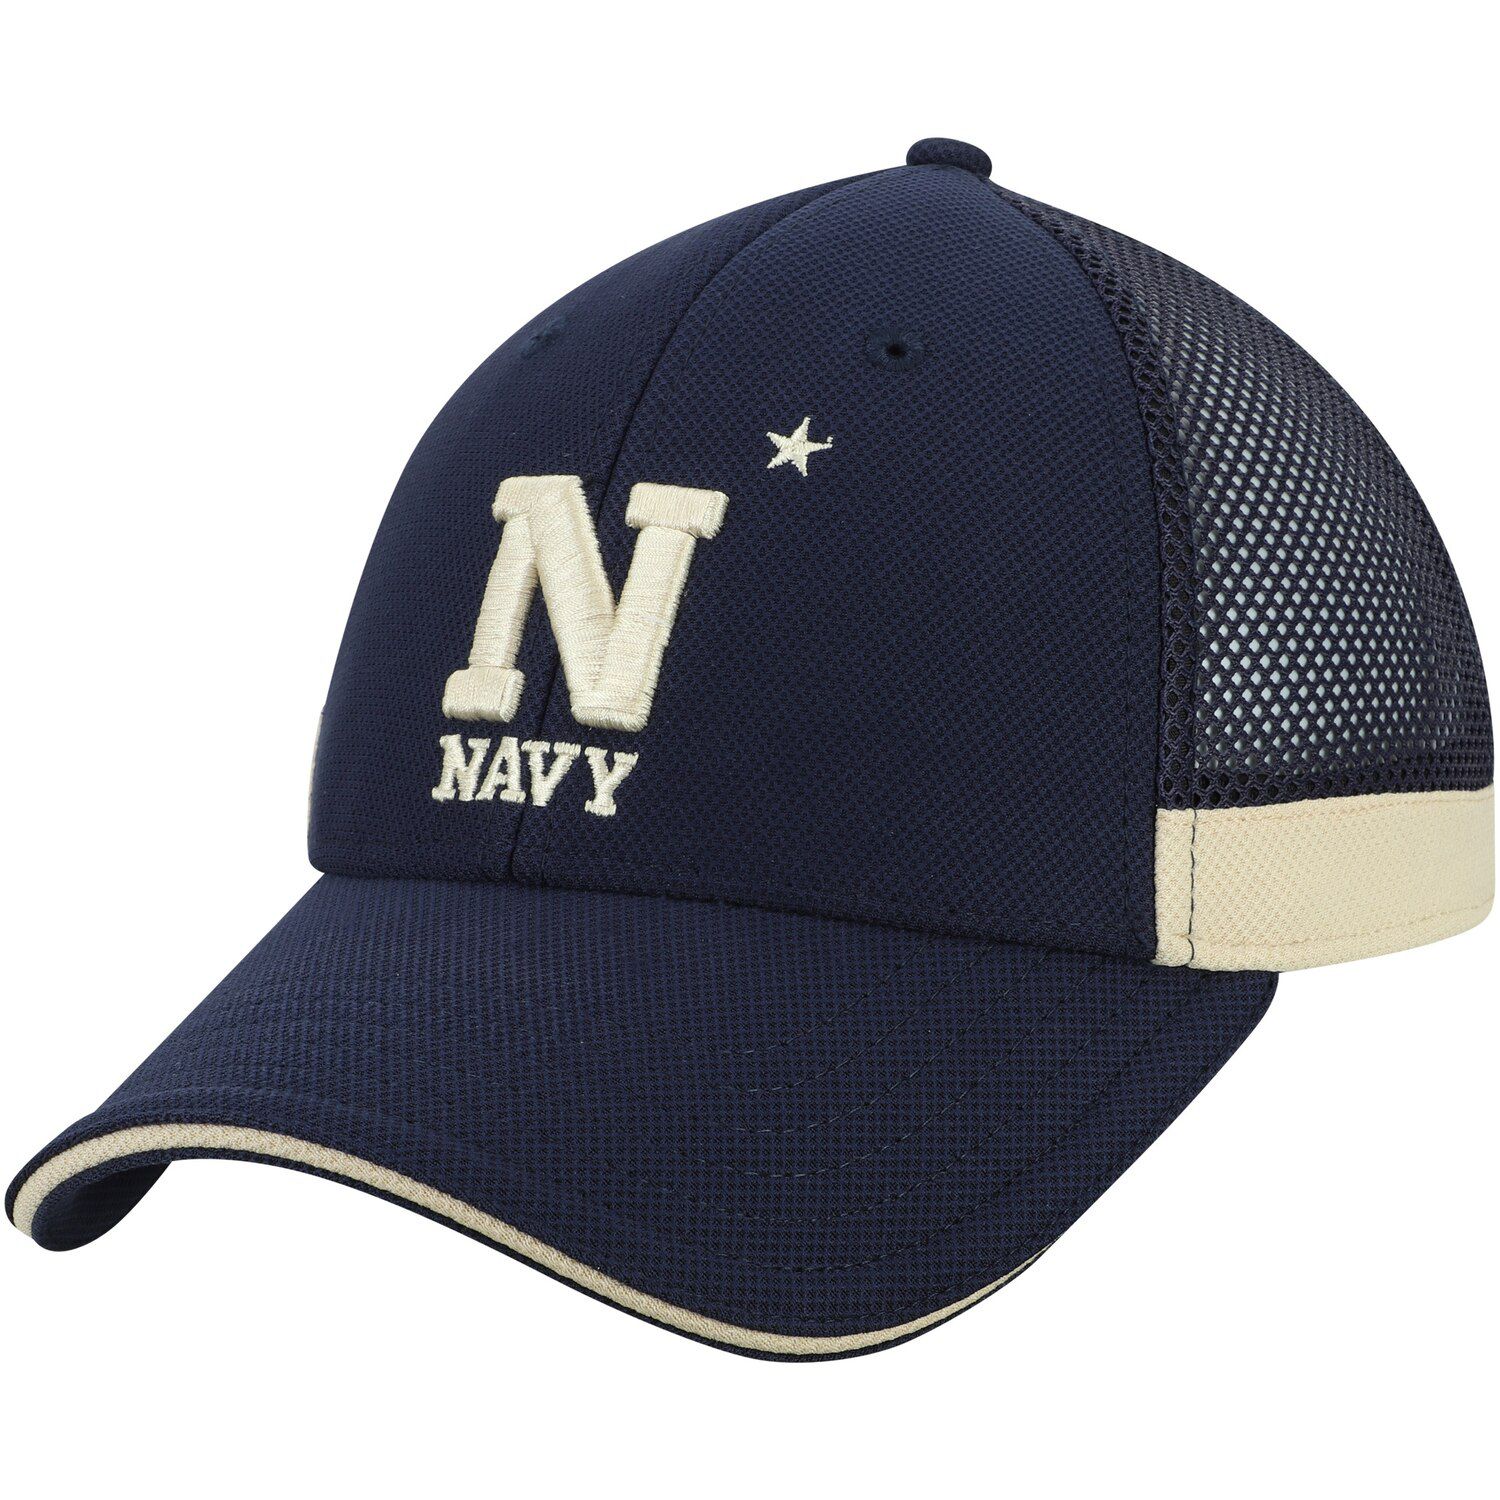 navy under armour hat